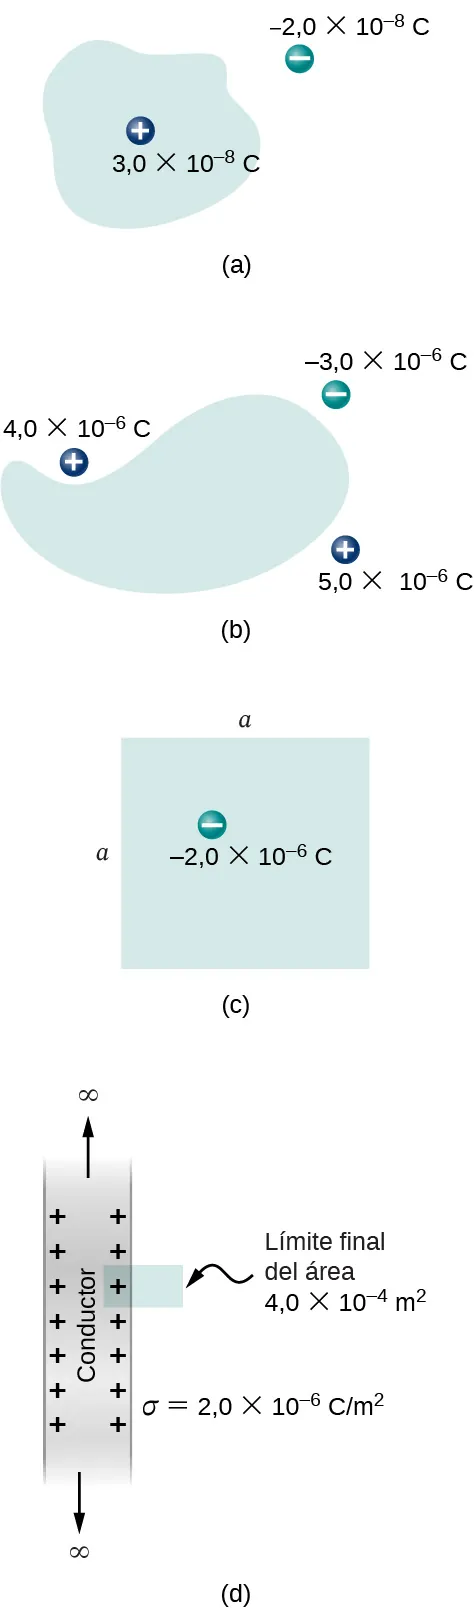 La figura a muestra una forma irregular con una carga positiva en su interior marcada como 3 en 10 a la potencia menos 8 C. Hay una carga negativa fuera de ella, marcada como menos 2 en 10 a la potencia 8 C. La figura b muestra una forma irregular con tres cargas fuera de ella. Estos son más 4 en 10 a la potencia menos 6 C, más 5 en 10 a la potencia menos 6 C y menos tres en 10 a la potencia menos 6 C. La figura c muestra un cuadrado con la longitud de cada lado igual a. Hay una carga menos 2 en 10 a la potencia menos 6 C en su interior. La figura d muestra una franja sombreada con signos de más cerca de los bordes interiores. Está marcada como conductor. Una flecha señala hacia fuera desde ambos extremos de la franja. Estas flechas están marcadas como infinito. Un pequeño rectángulo se adhiere a un lado de la franja, cubriendo un signo más. Está marcado como límite final del área, 4 en 10 a la potencia menos 4 m al cuadrado. La franja está marcada como sigma igual a 2 en 10 a la potencia menos 6 C por m al cuadrado.